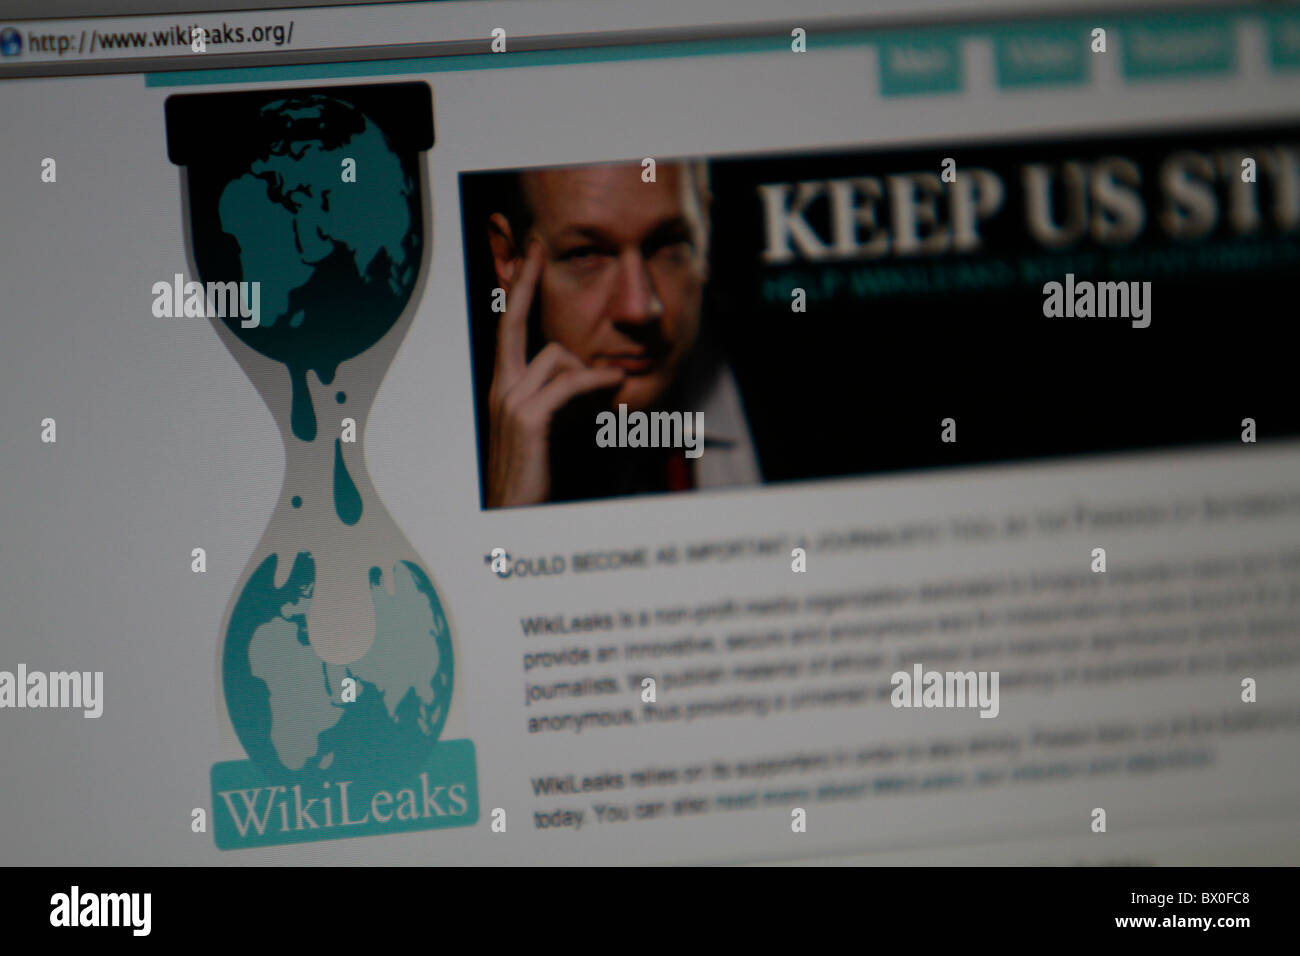 Gros plan du site wikileaks Banque D'Images